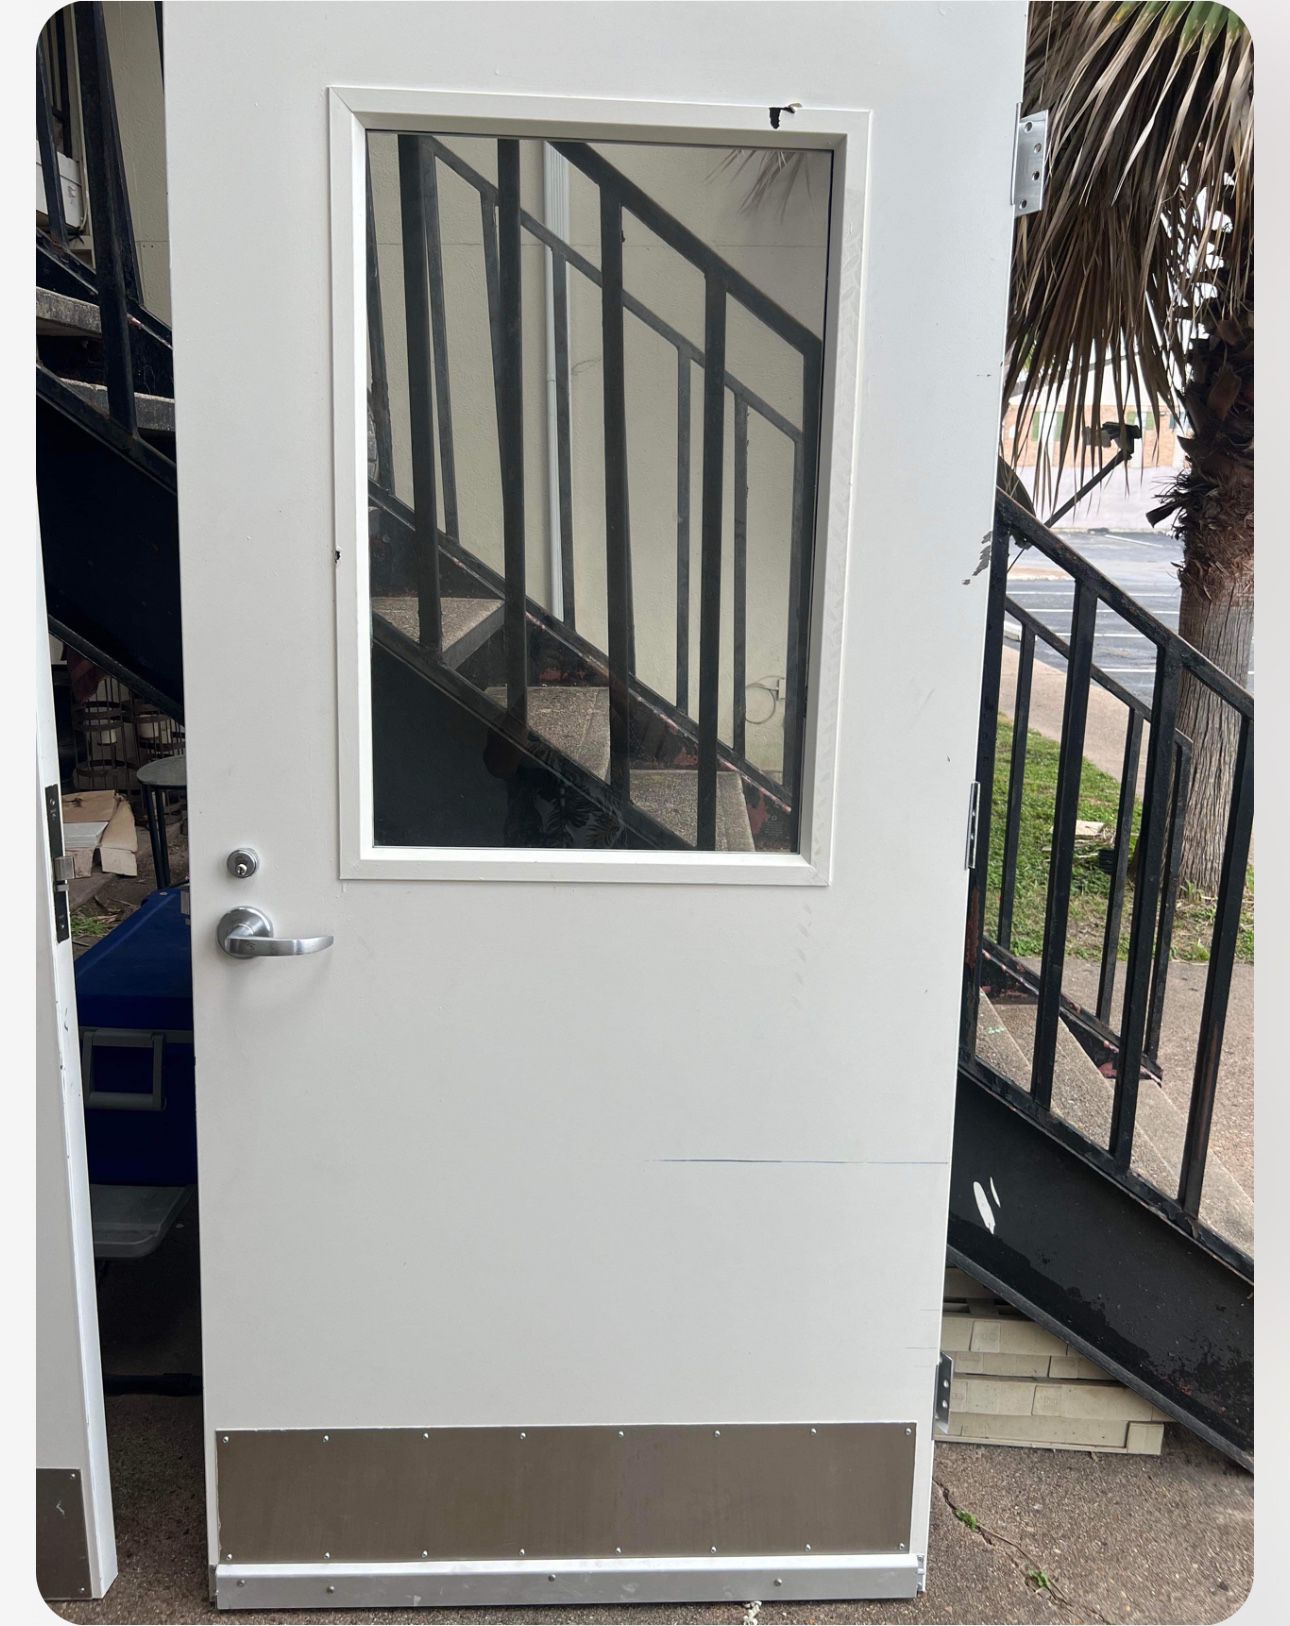 Comercial Metal Door With Frame